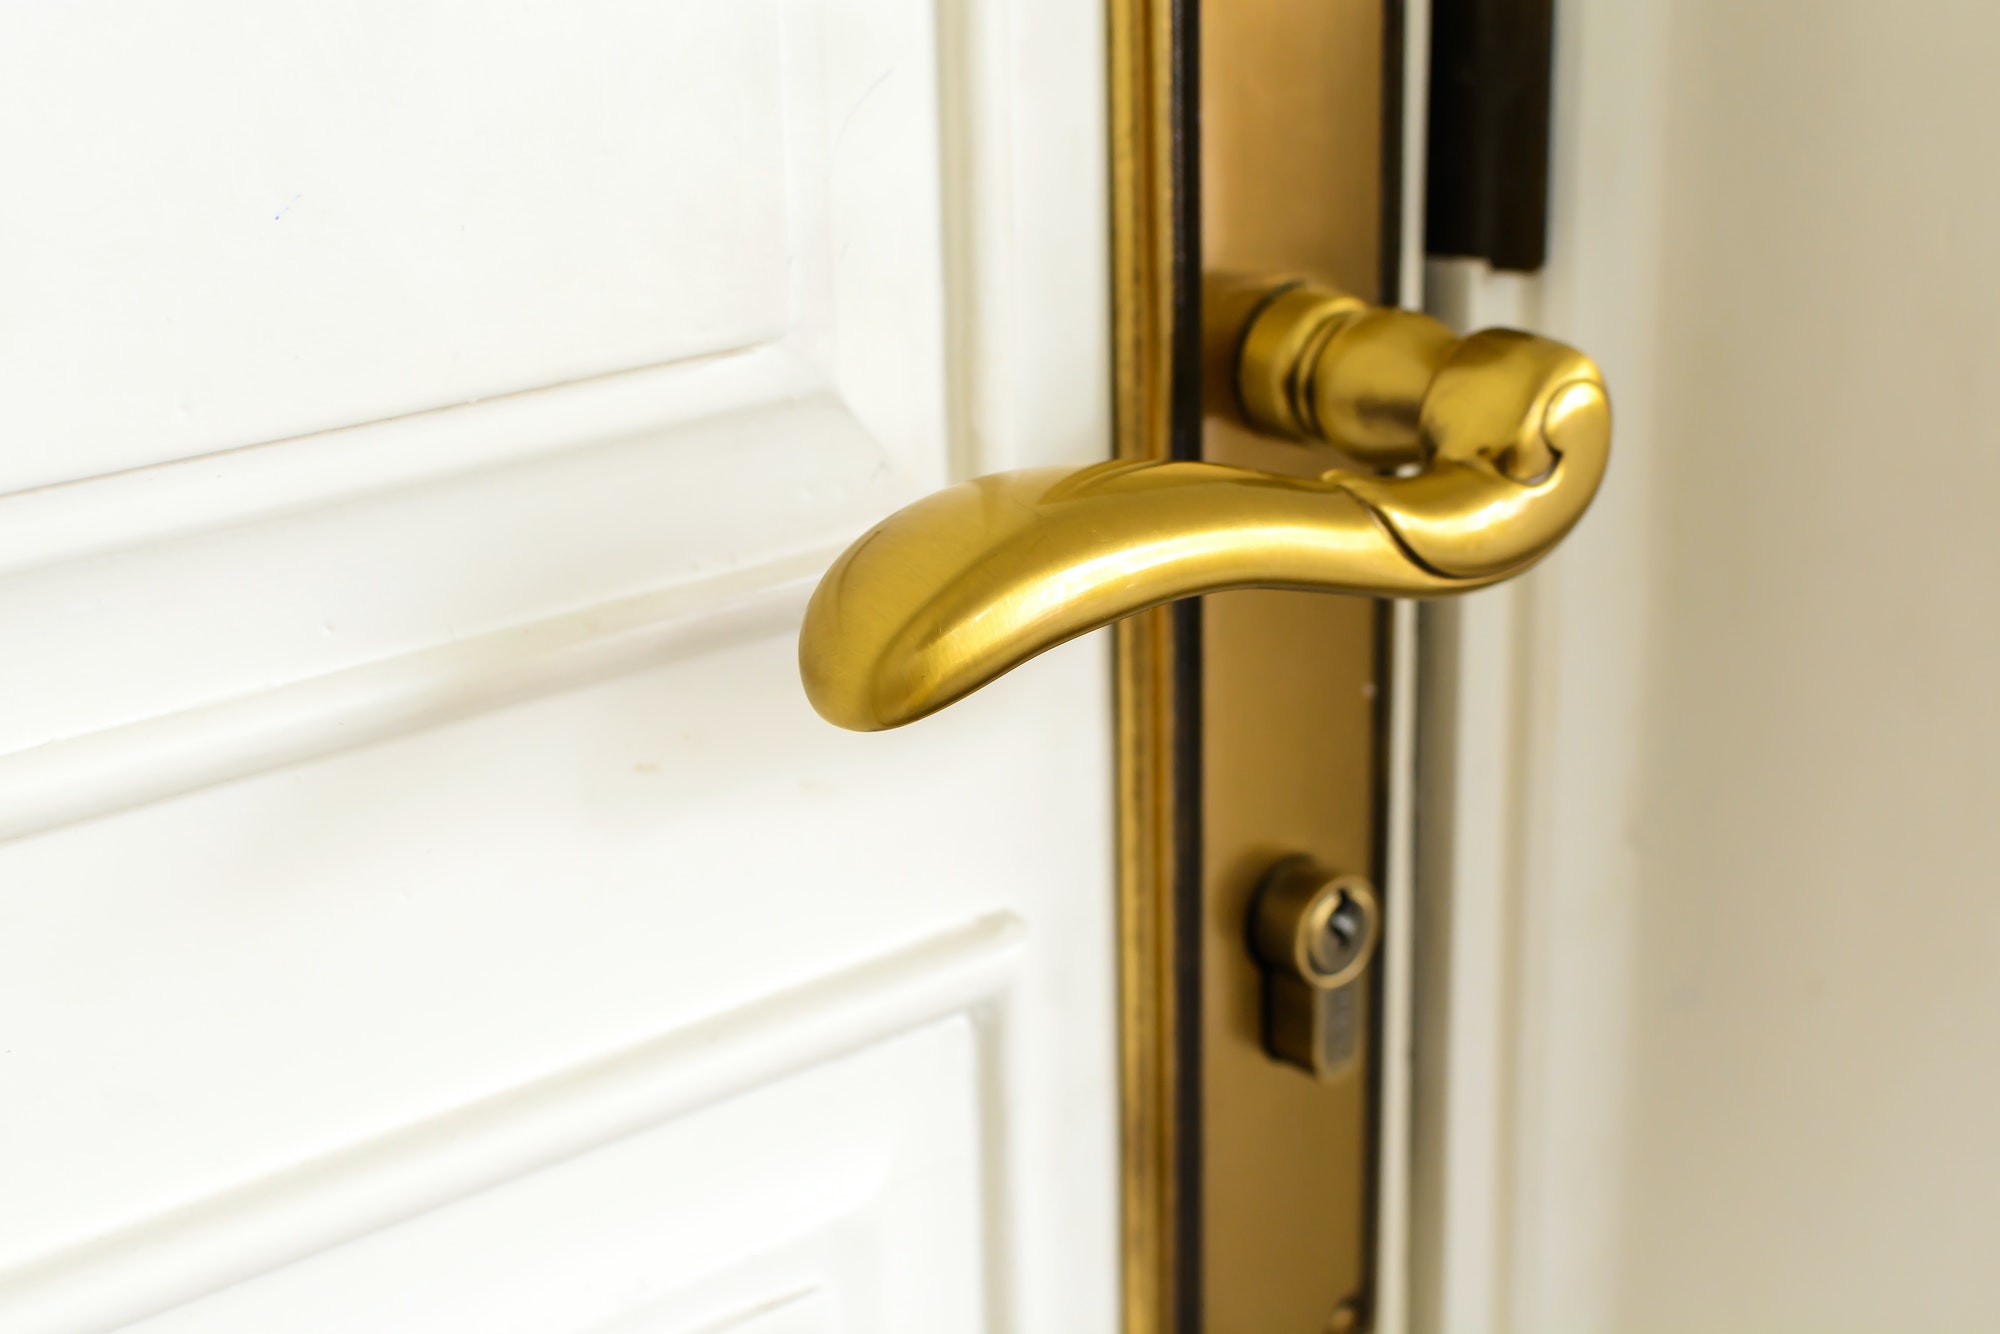 classic golden door handle on white door